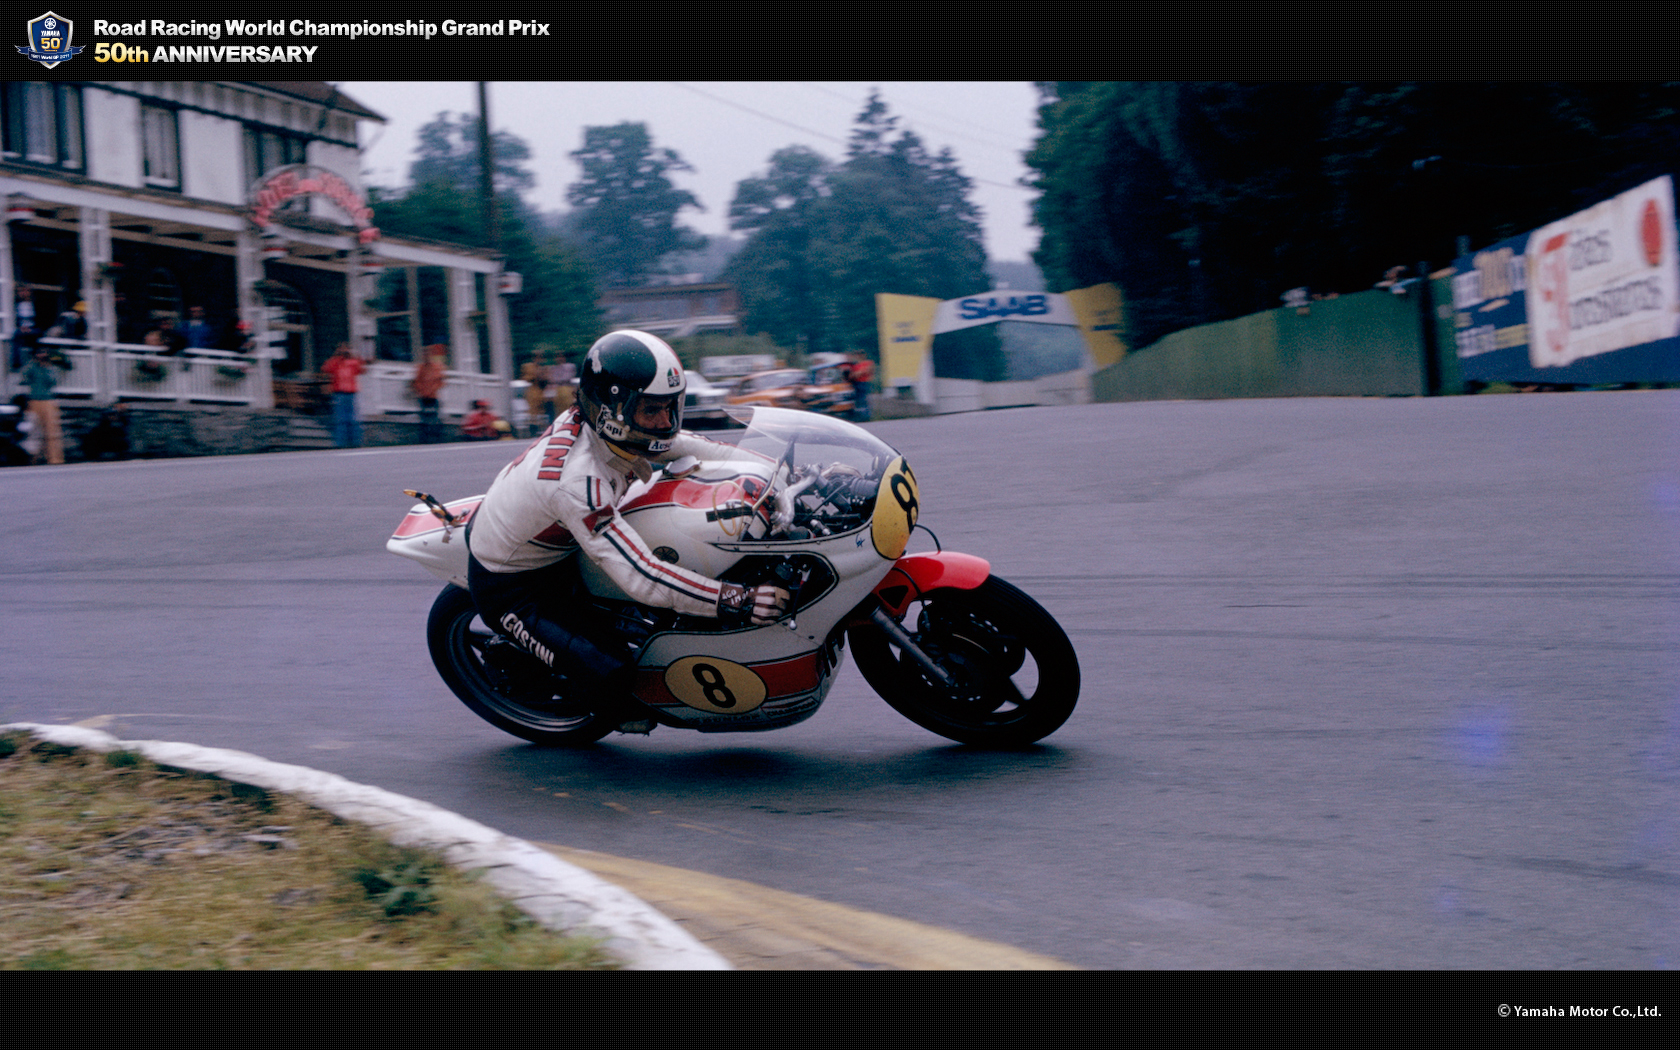 Giacomo Agostini. Yamaha Motor Co., Ltd